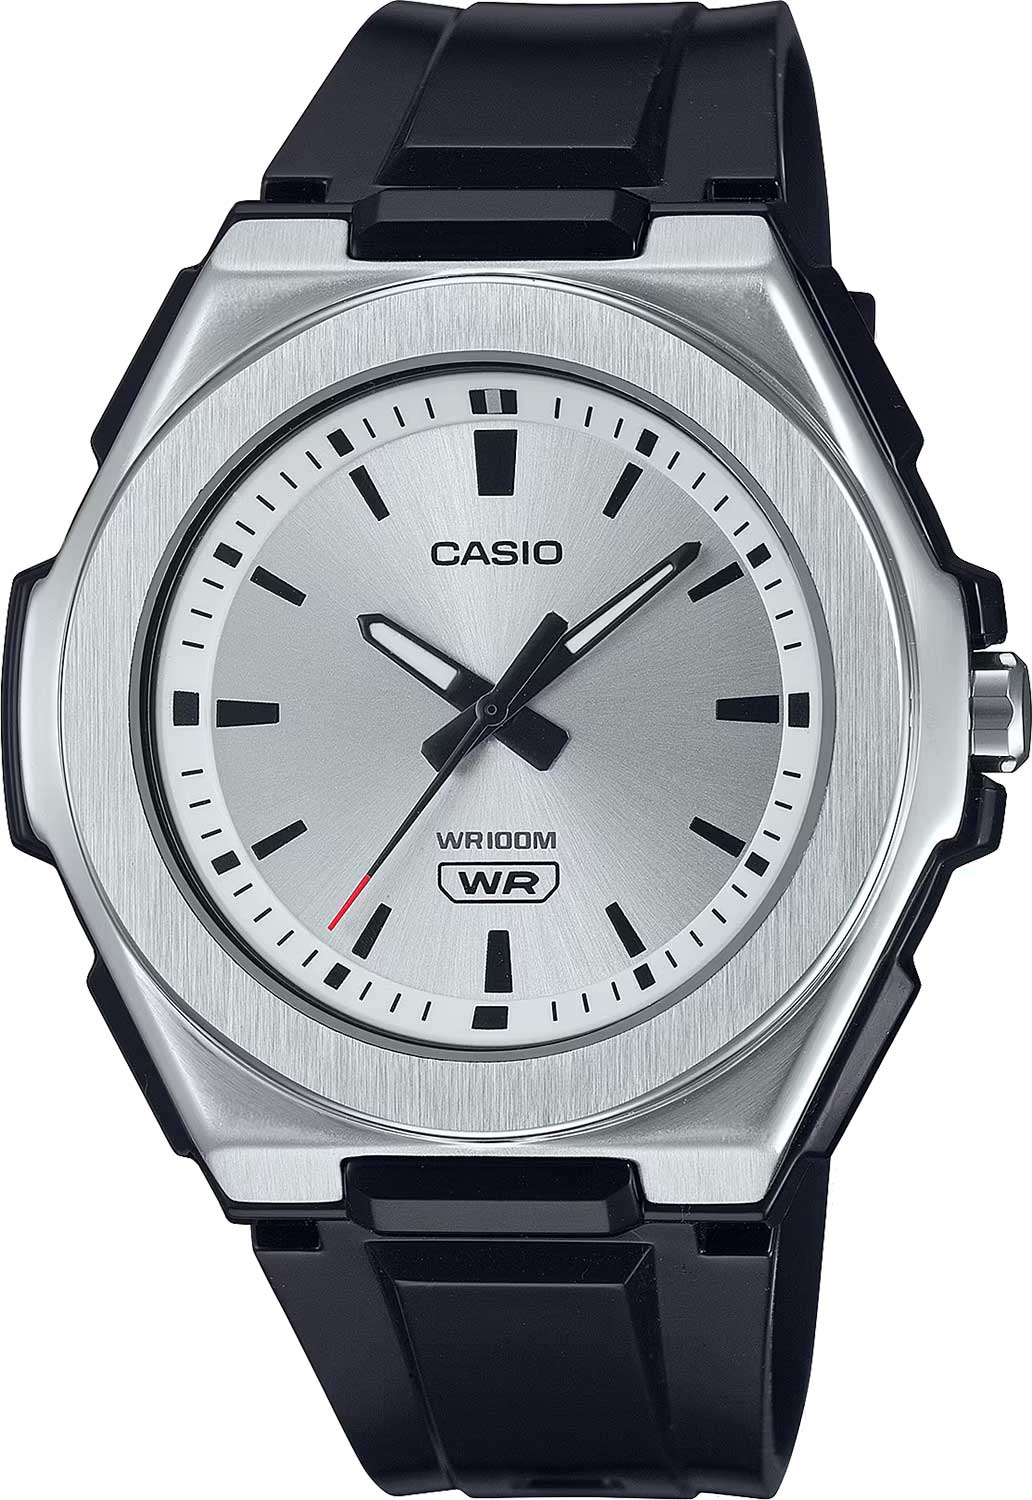    Casio Collection LWA-300H-7E2